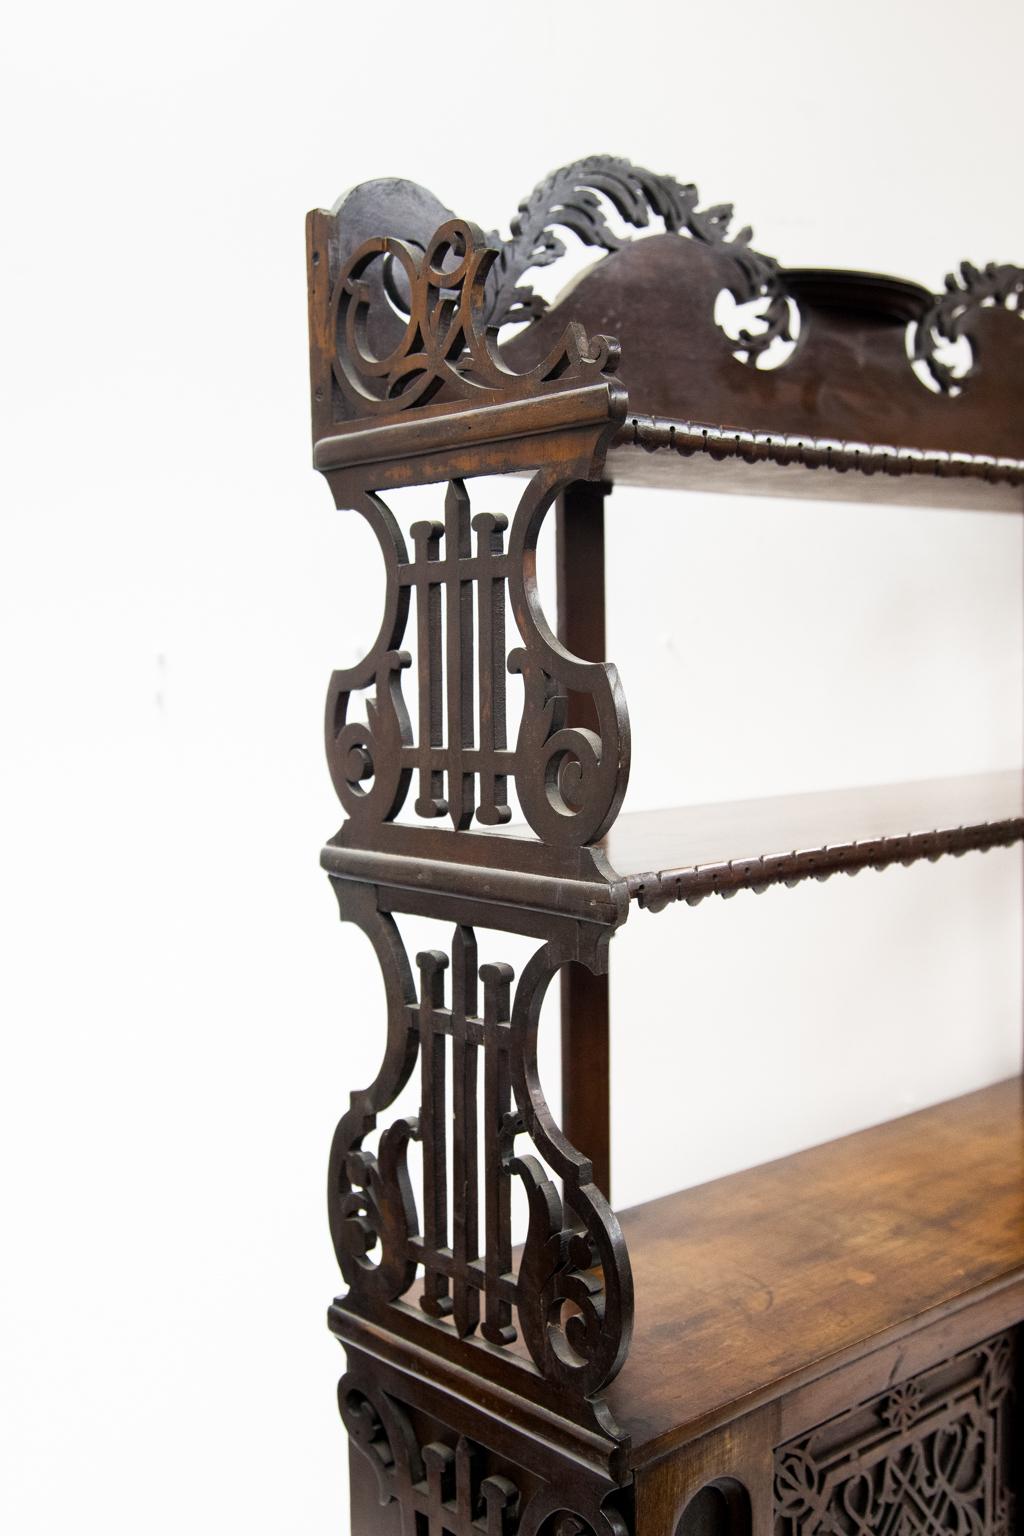 Das dreistöckige Regal aus Mahagoni mit durchbrochenen Laubsägearbeiten hat Seiten in Form einer stilisierten Lyra. Die beiden Türen mit blindem Laubsägewerk lassen sich herunterklappen. Das mittlere Regal und der Deckel sind mit geschnitzten